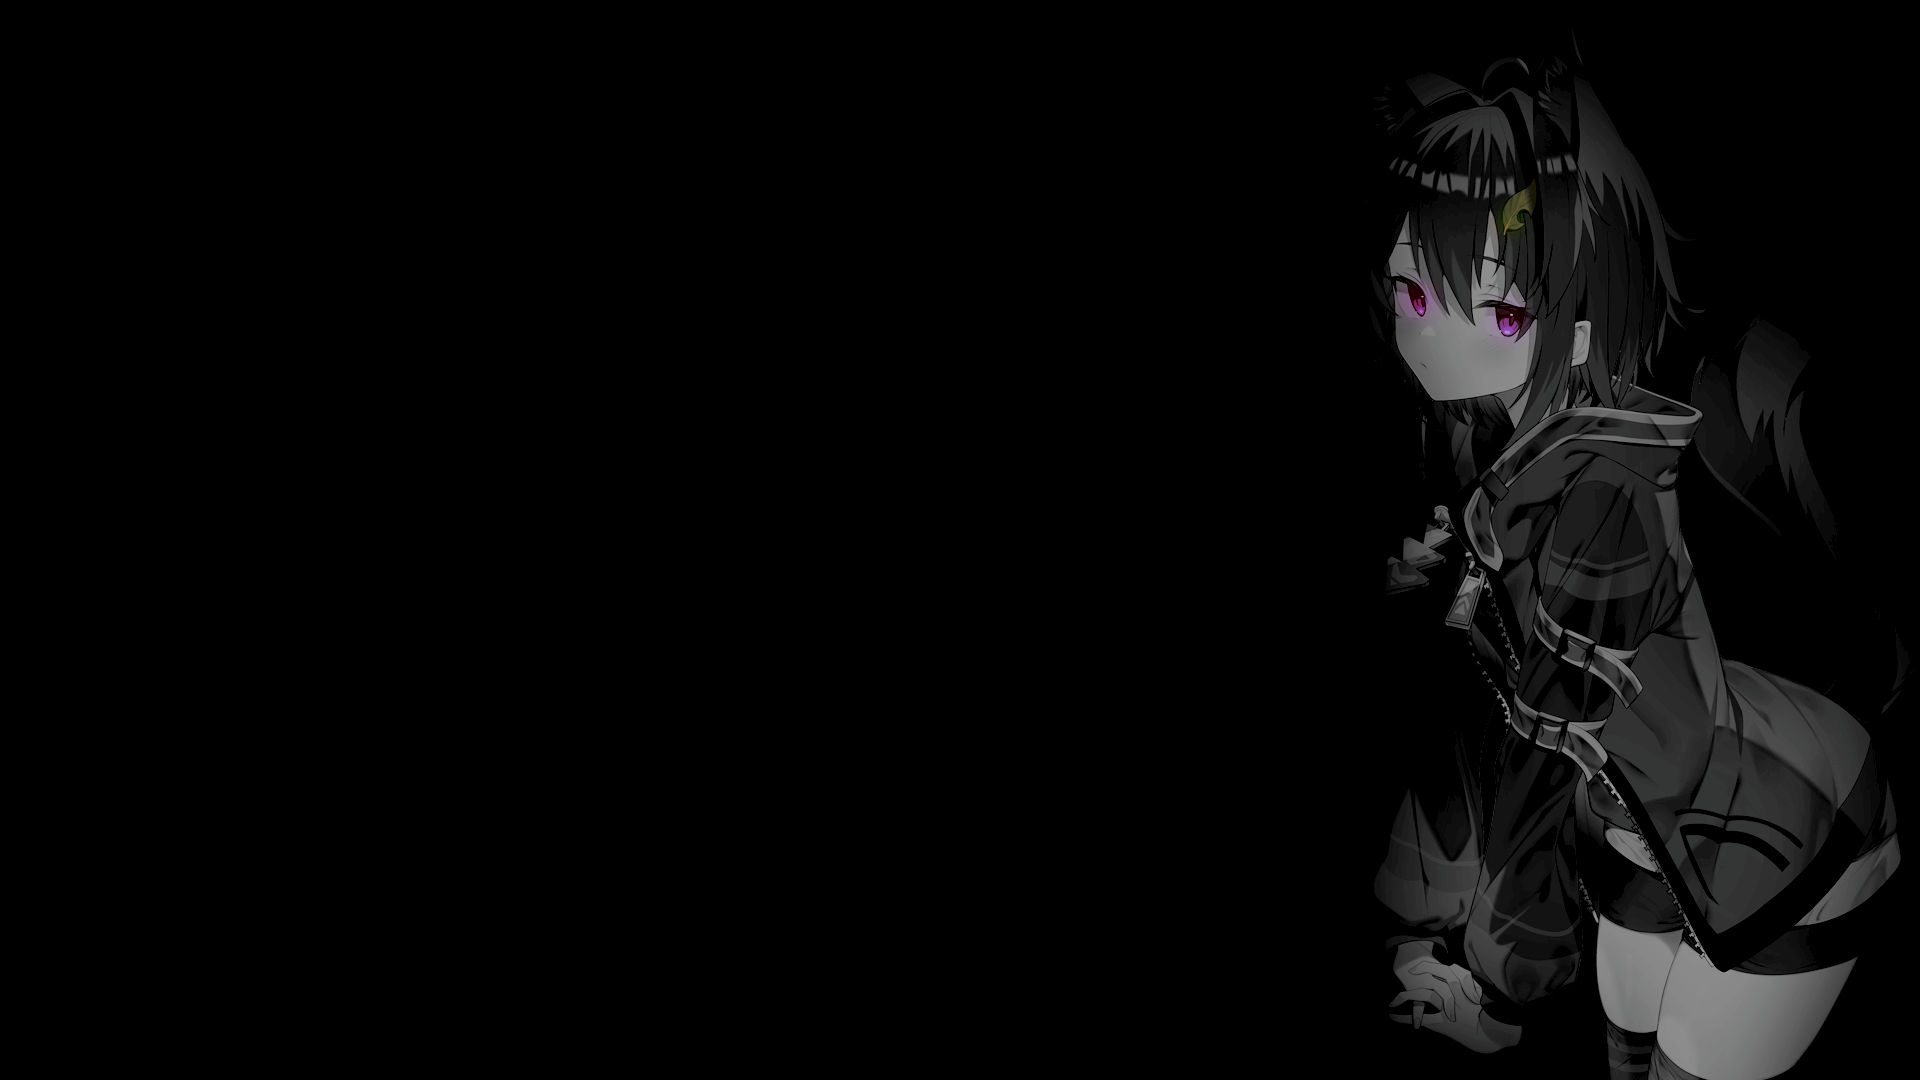 Anime 1920x1080 selective coloring anime girls black background dark background simple background